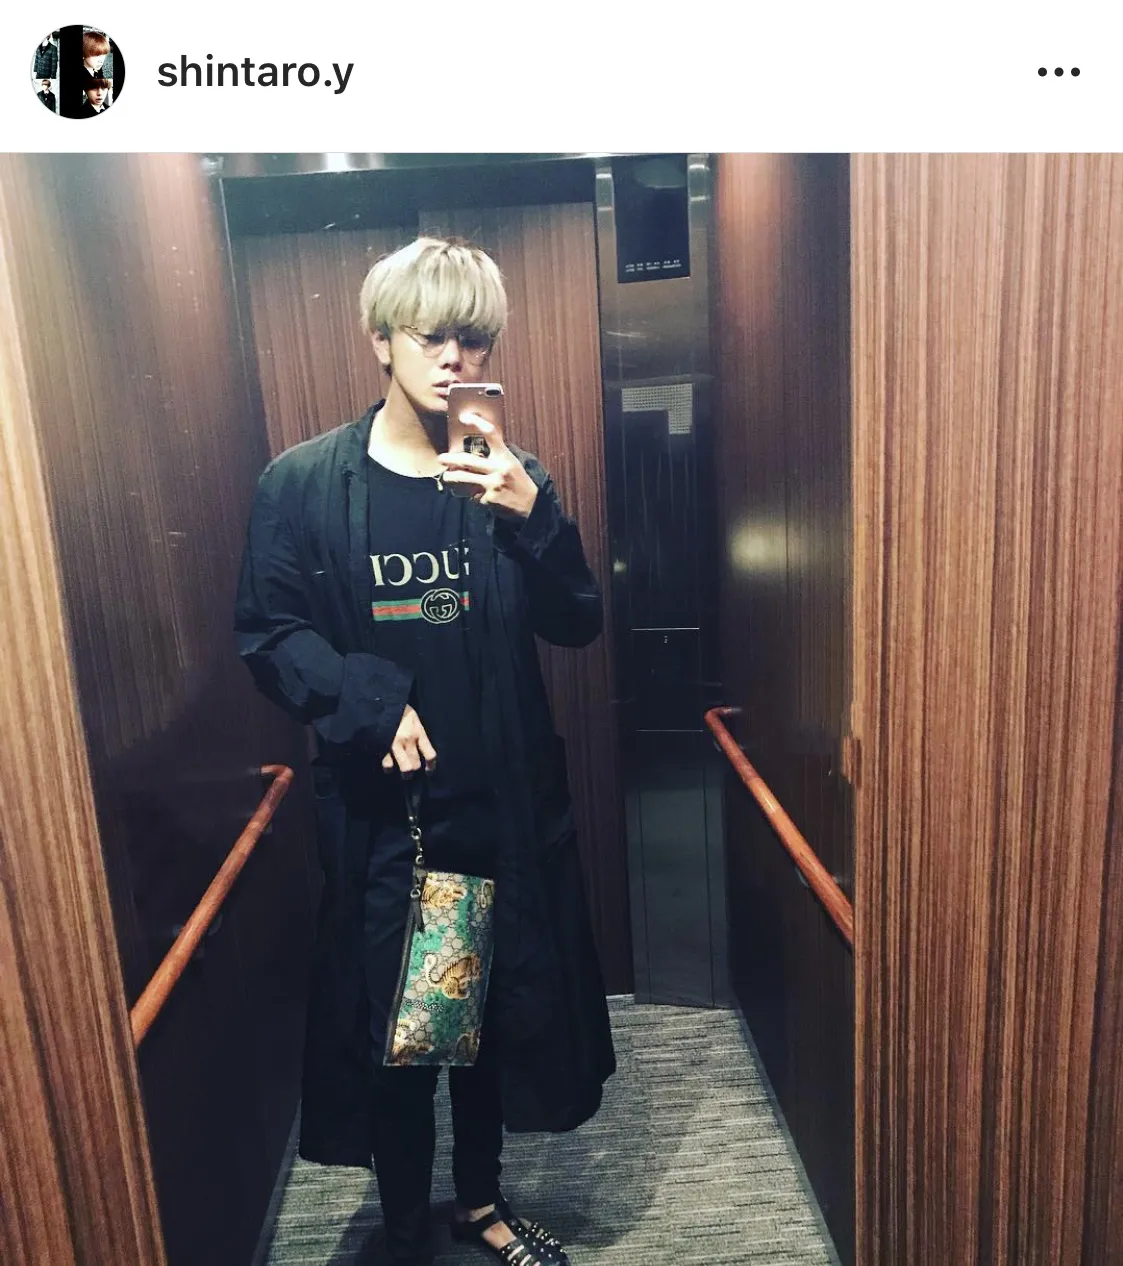 ※山田親太朗公式Instagram(shintaro.y)より